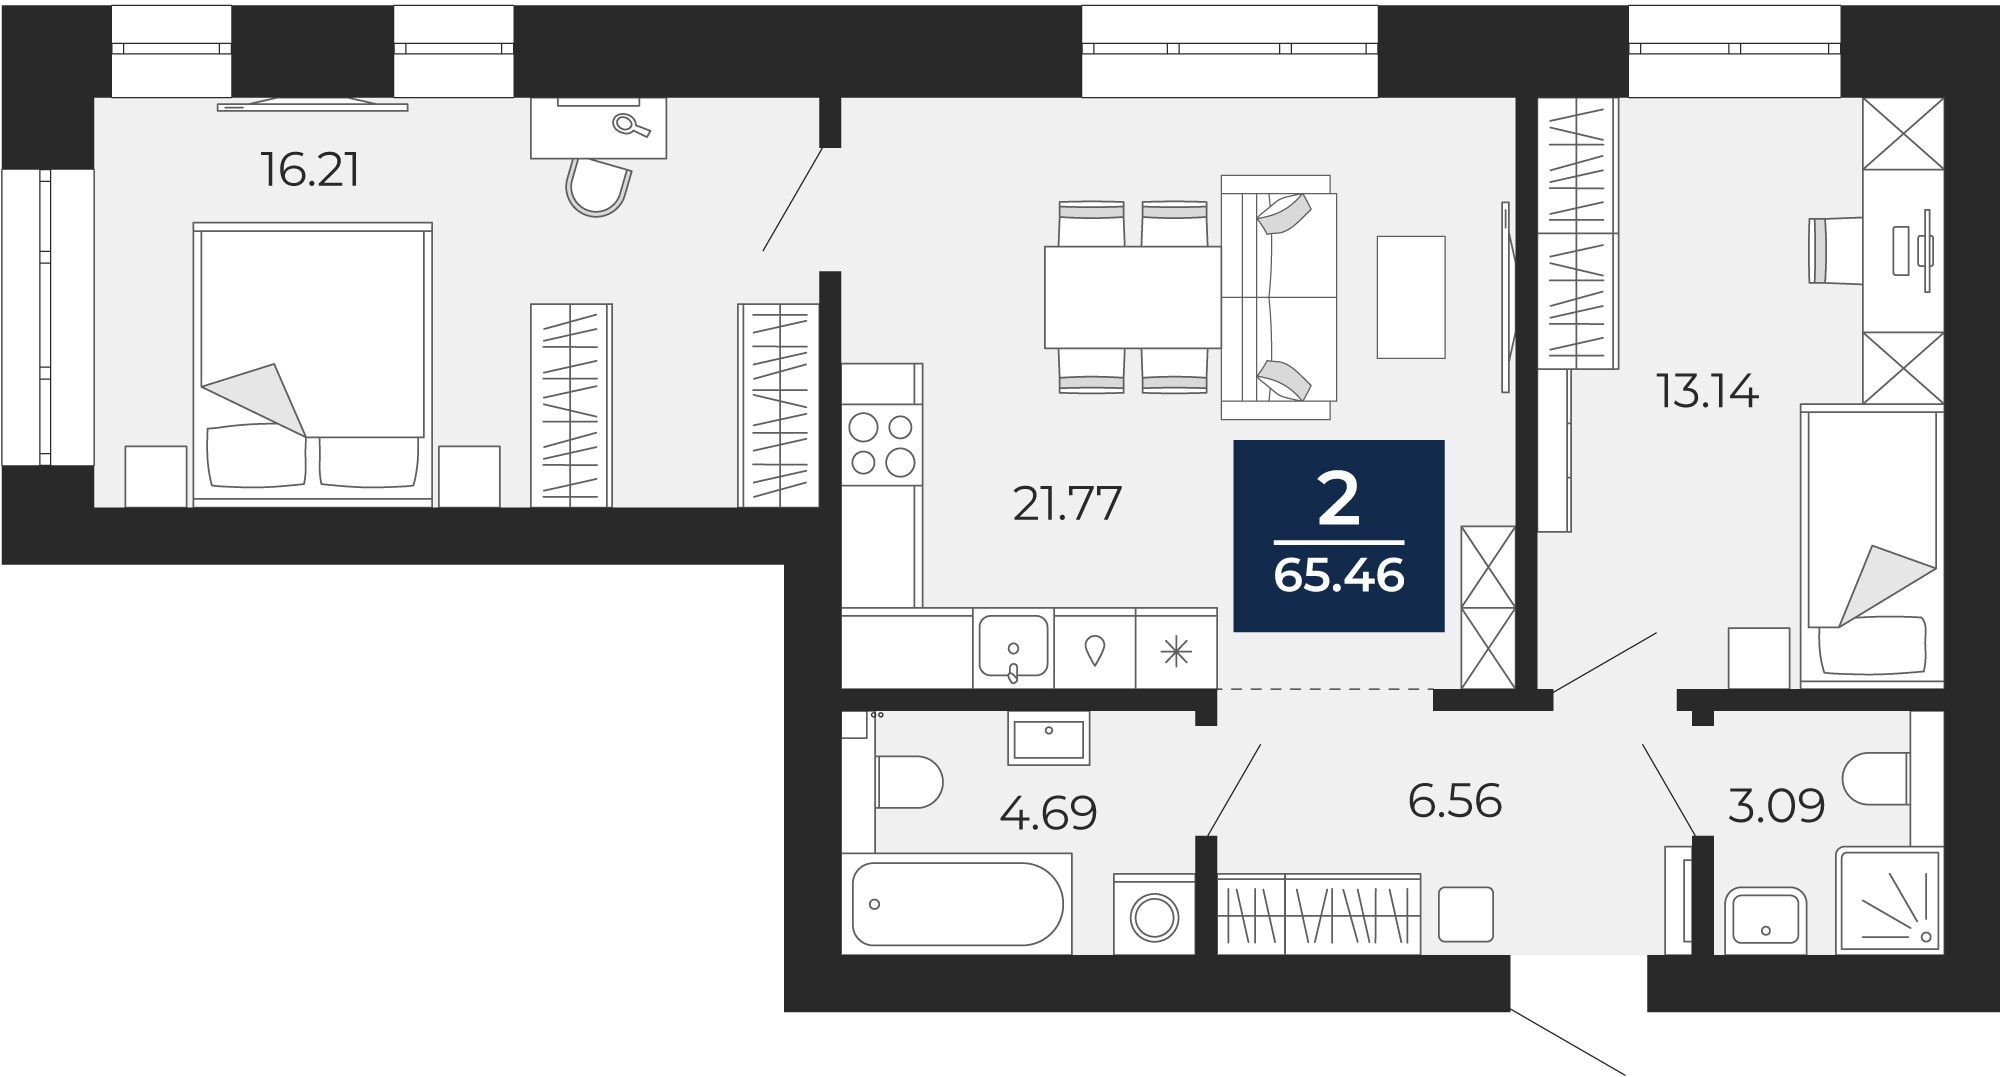 Квартира № 91, 2-комнатная, 65.46 кв. м, 8 этаж